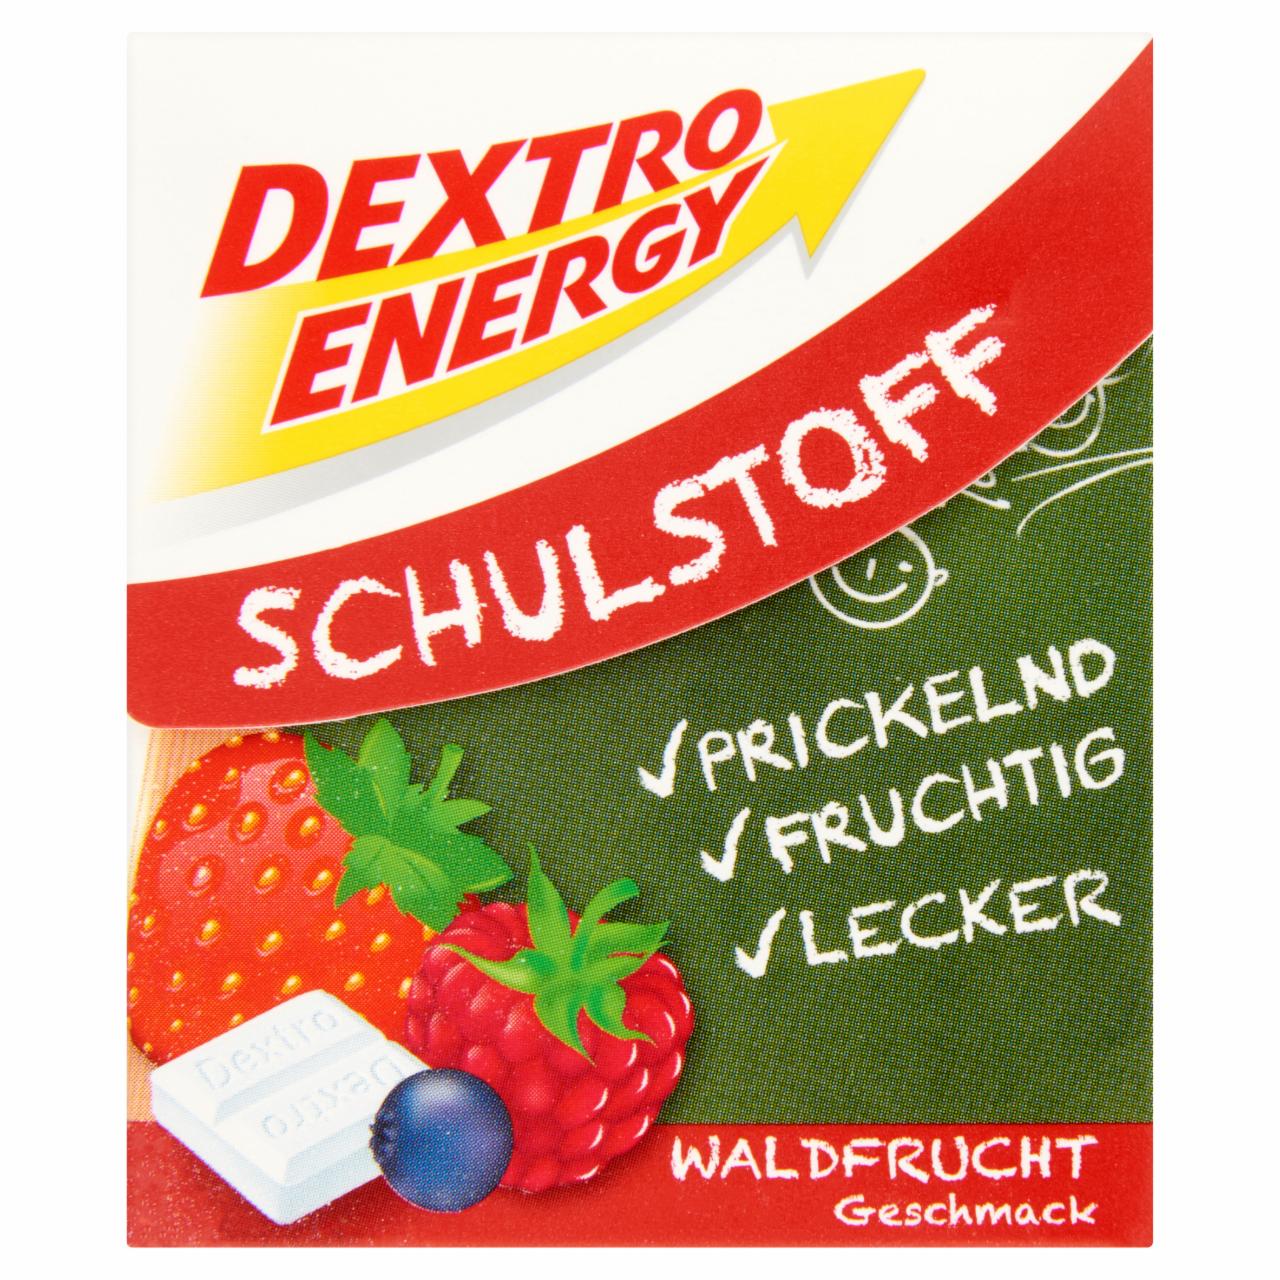 Képek - Dextro Energy energiát adó erdei gyümölcs ízesítésű szőlőcukor tabletták 50 g